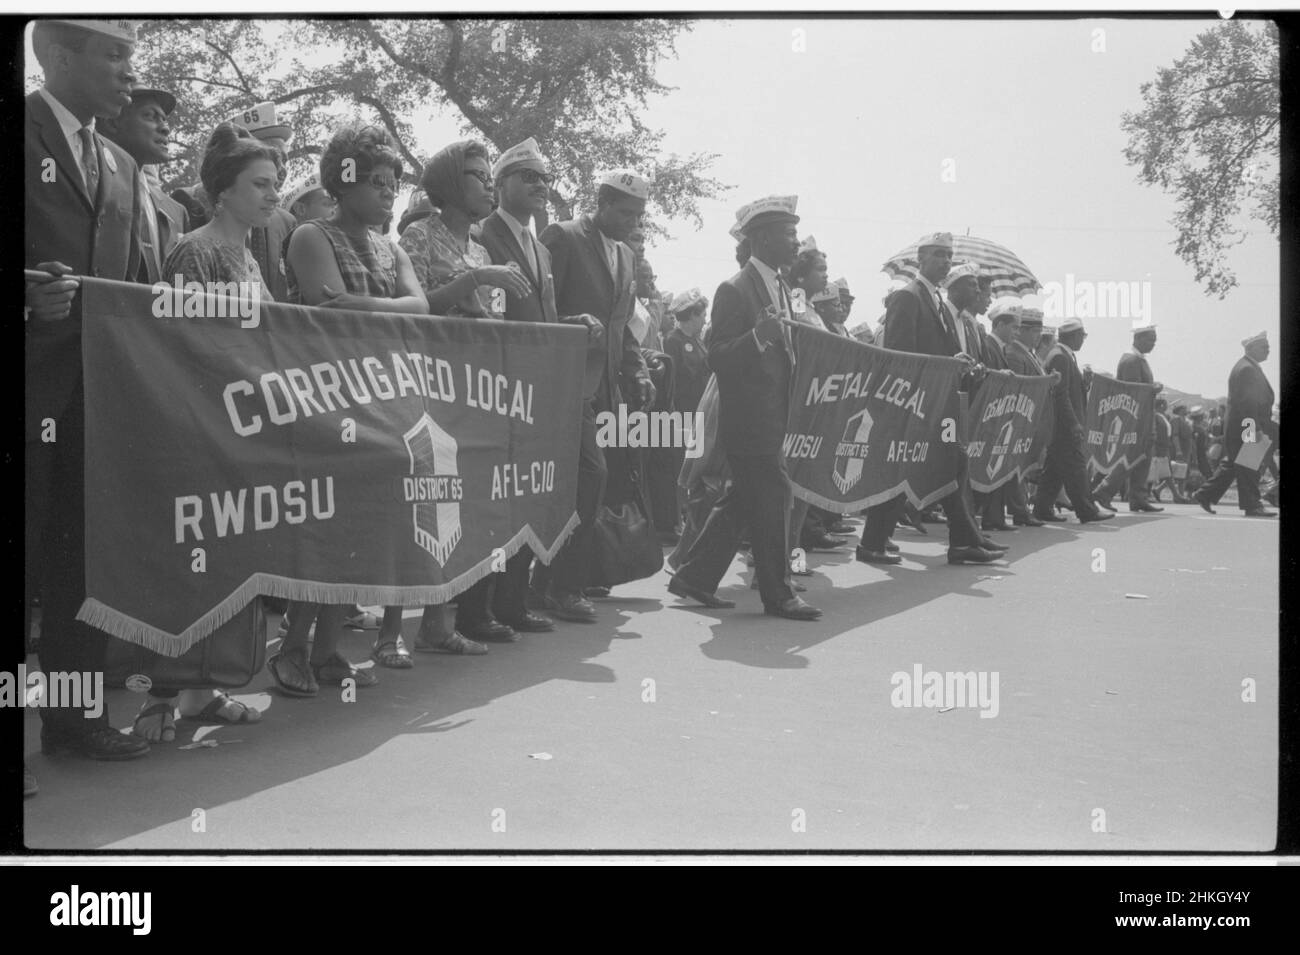 Manifestantes que portaban pancartas sindicales, incluyendo una lectura 'Corrugated Local RWDSU District 65, AFL-CIO' durante la marcha en Washington, 28 de agosto de 1963. Foto por Marion S Trikosko Foto de stock